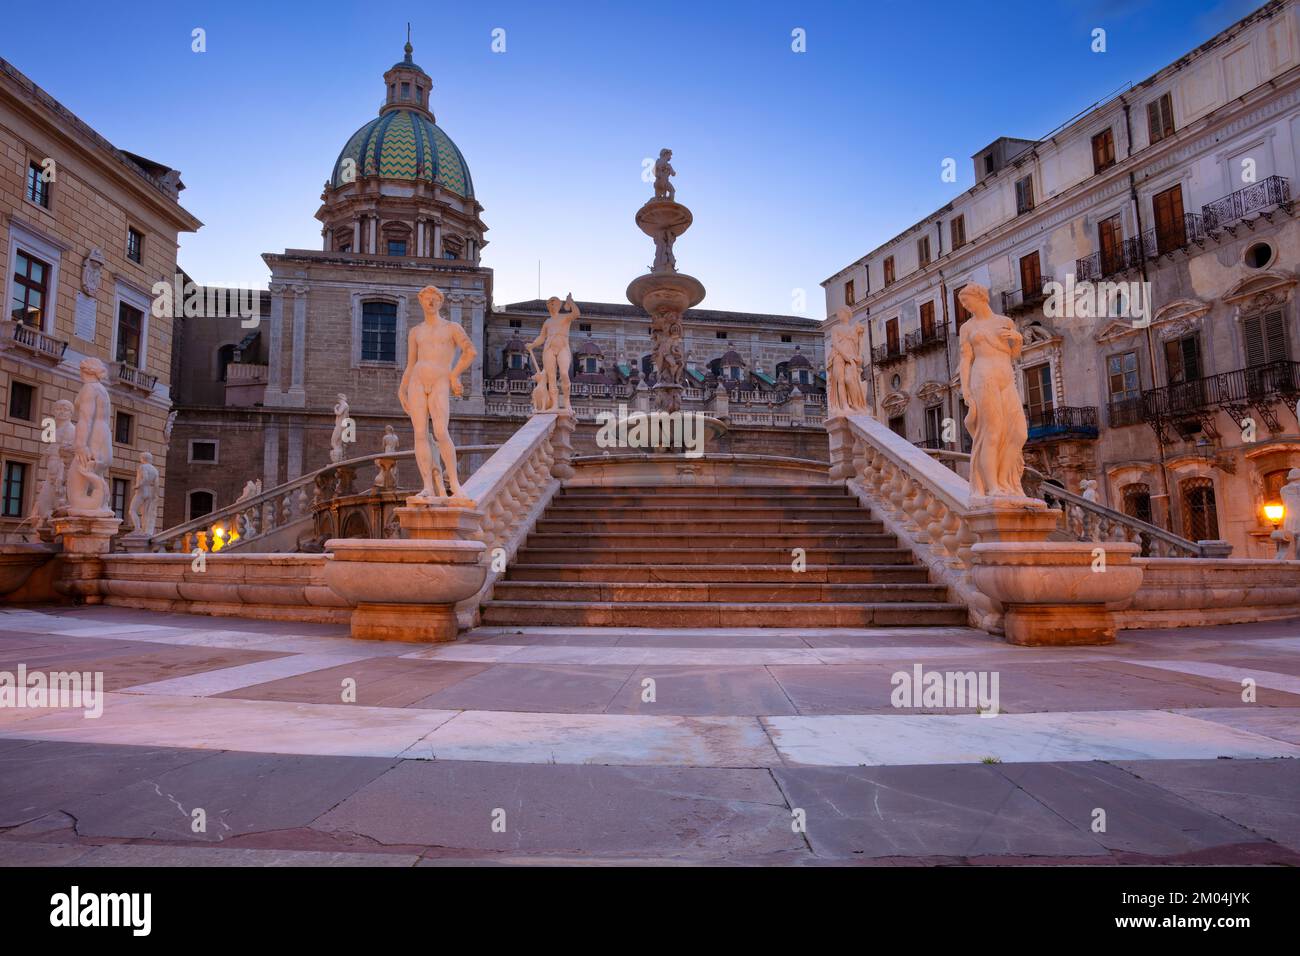 Palerme, Sicile, Italie. Image citadine de Palerme, Sicile avec la célèbre fontaine prétorienne située sur la Piazza Pretoria au coucher du soleil. Banque D'Images